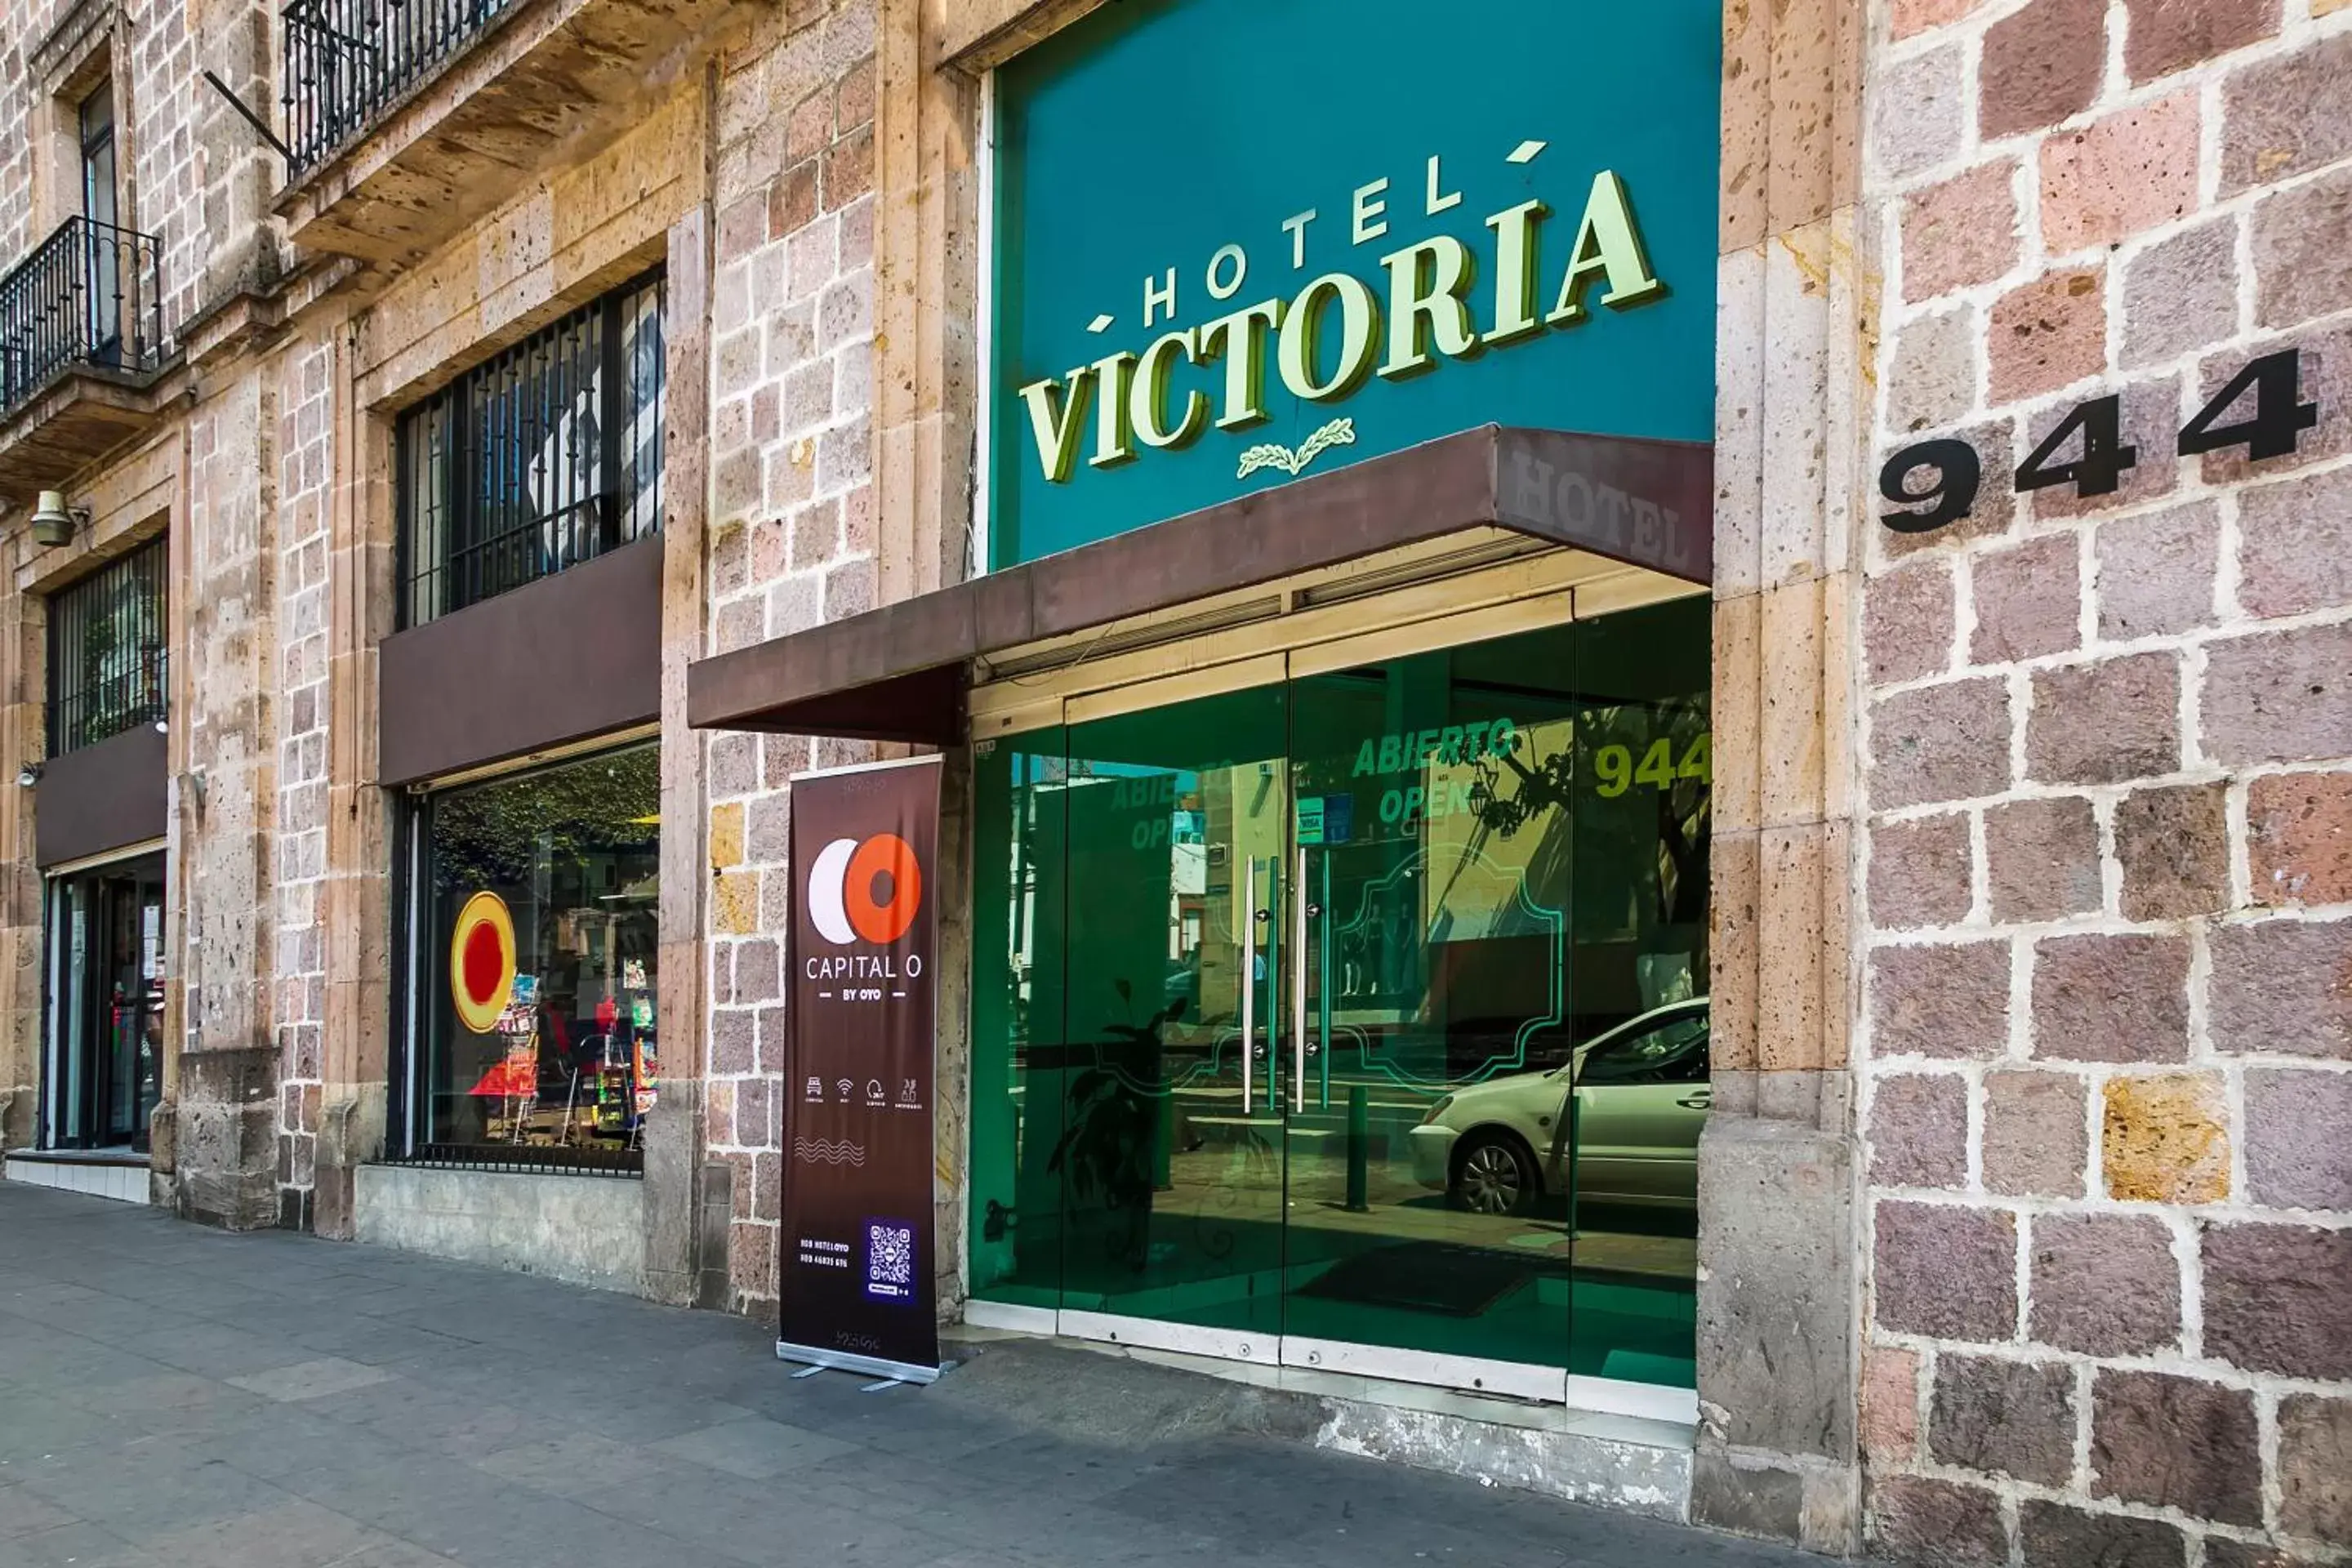 Facade/entrance in Capital O Hotel Victoria Morelia